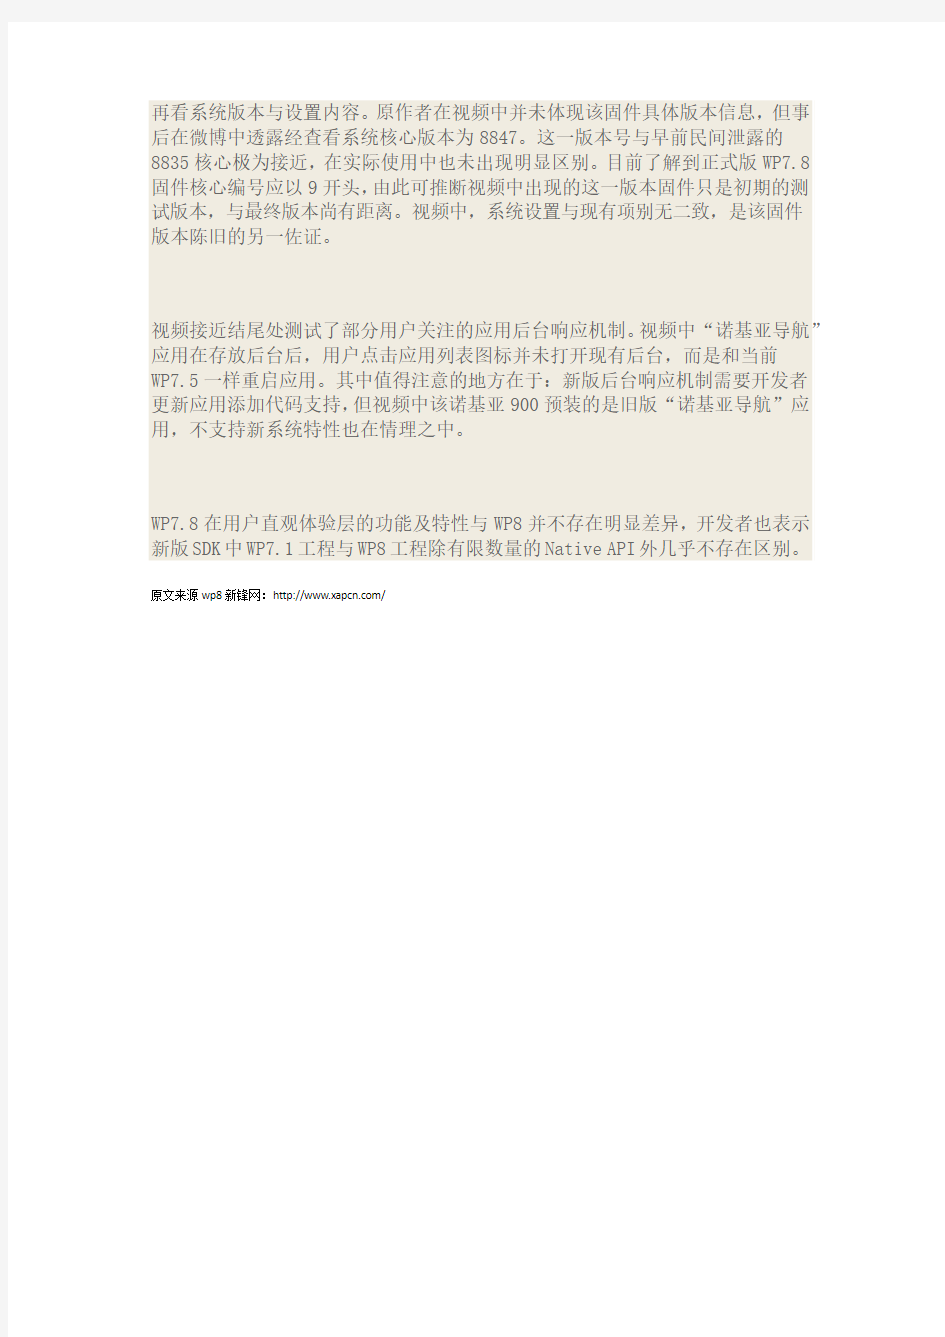 上海来福士体验诺基亚900 WP7.8后续